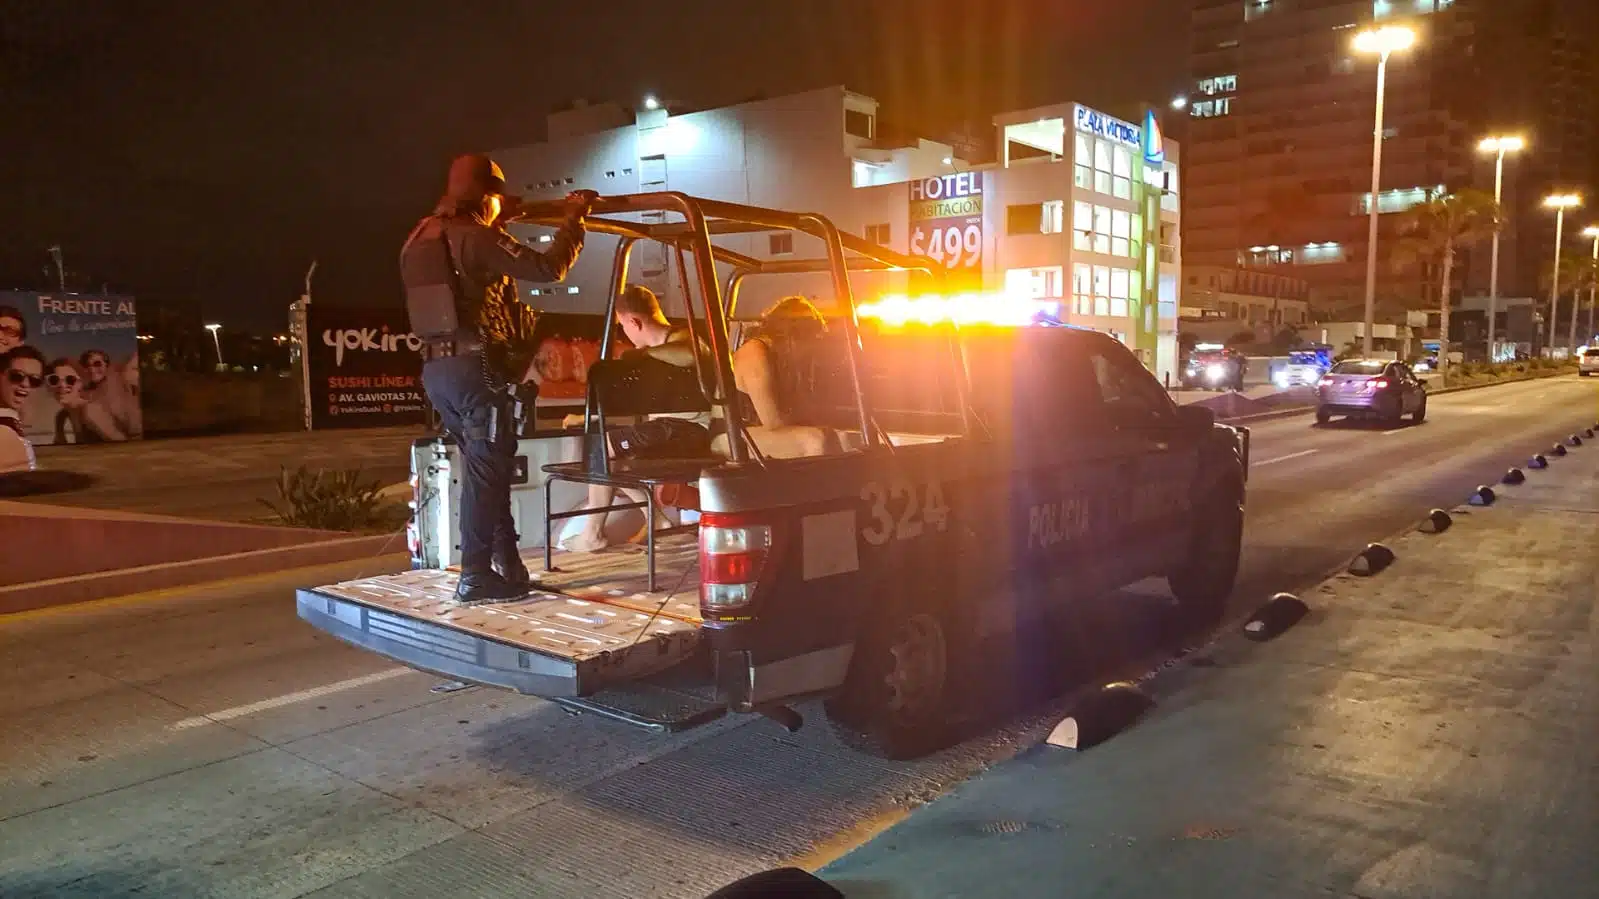 Camioneta de la policía Municipal de Mazatlán con 3 personas arriba